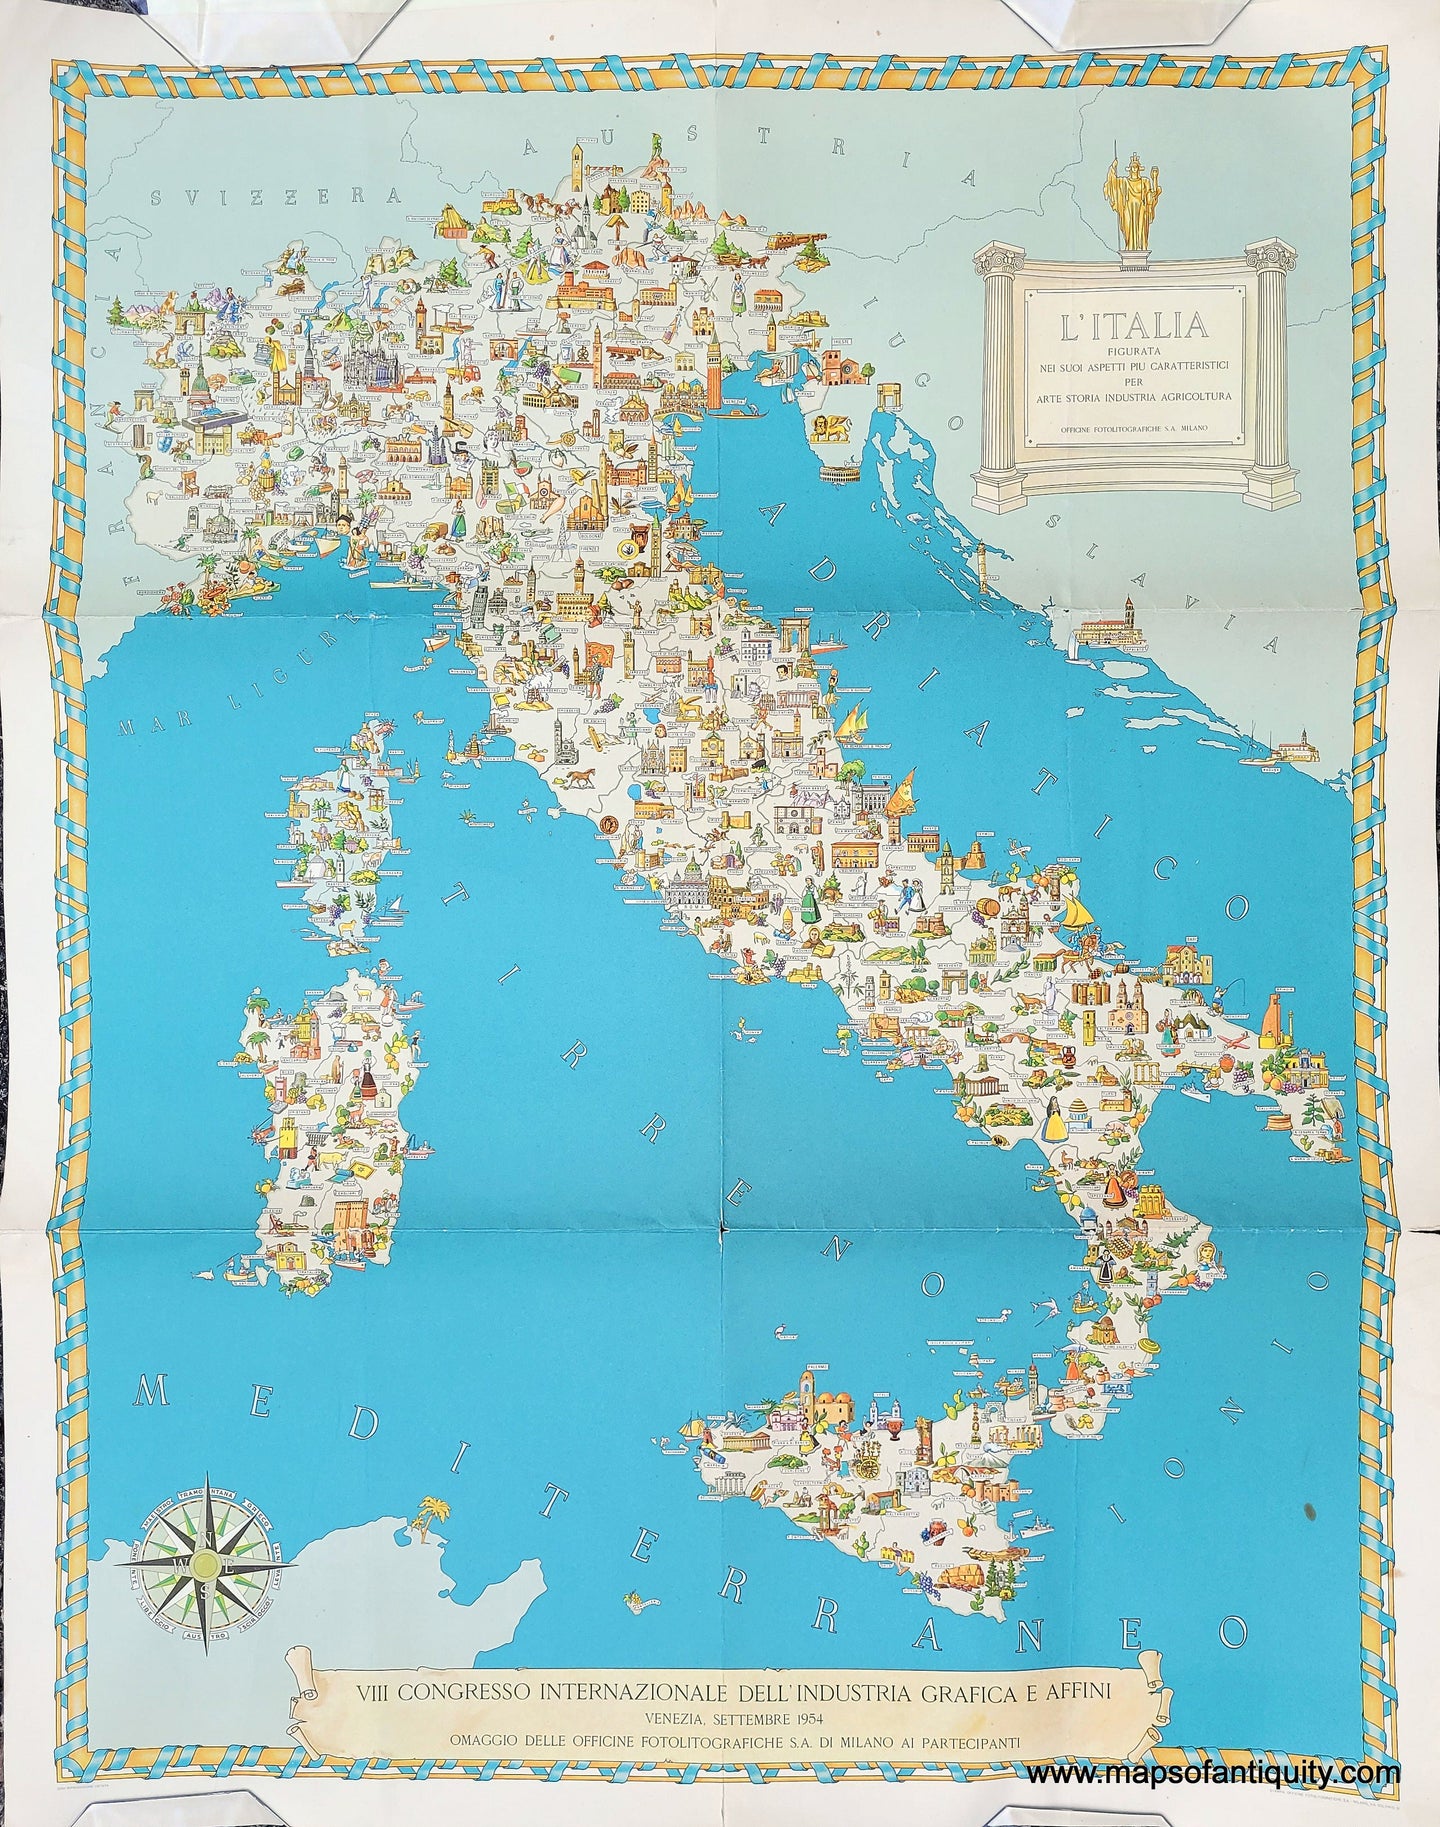 Genuine-Vintage-Antique-Map-Italy-L-Italia-Figurata-nei-suoi-Aspetti-piu-Caratteristici-per-Arte-Storia-Industria-Agricoltura-1954-Officine-Fotolitografiche-S-A--Milano-Maps-Of-Antiquity